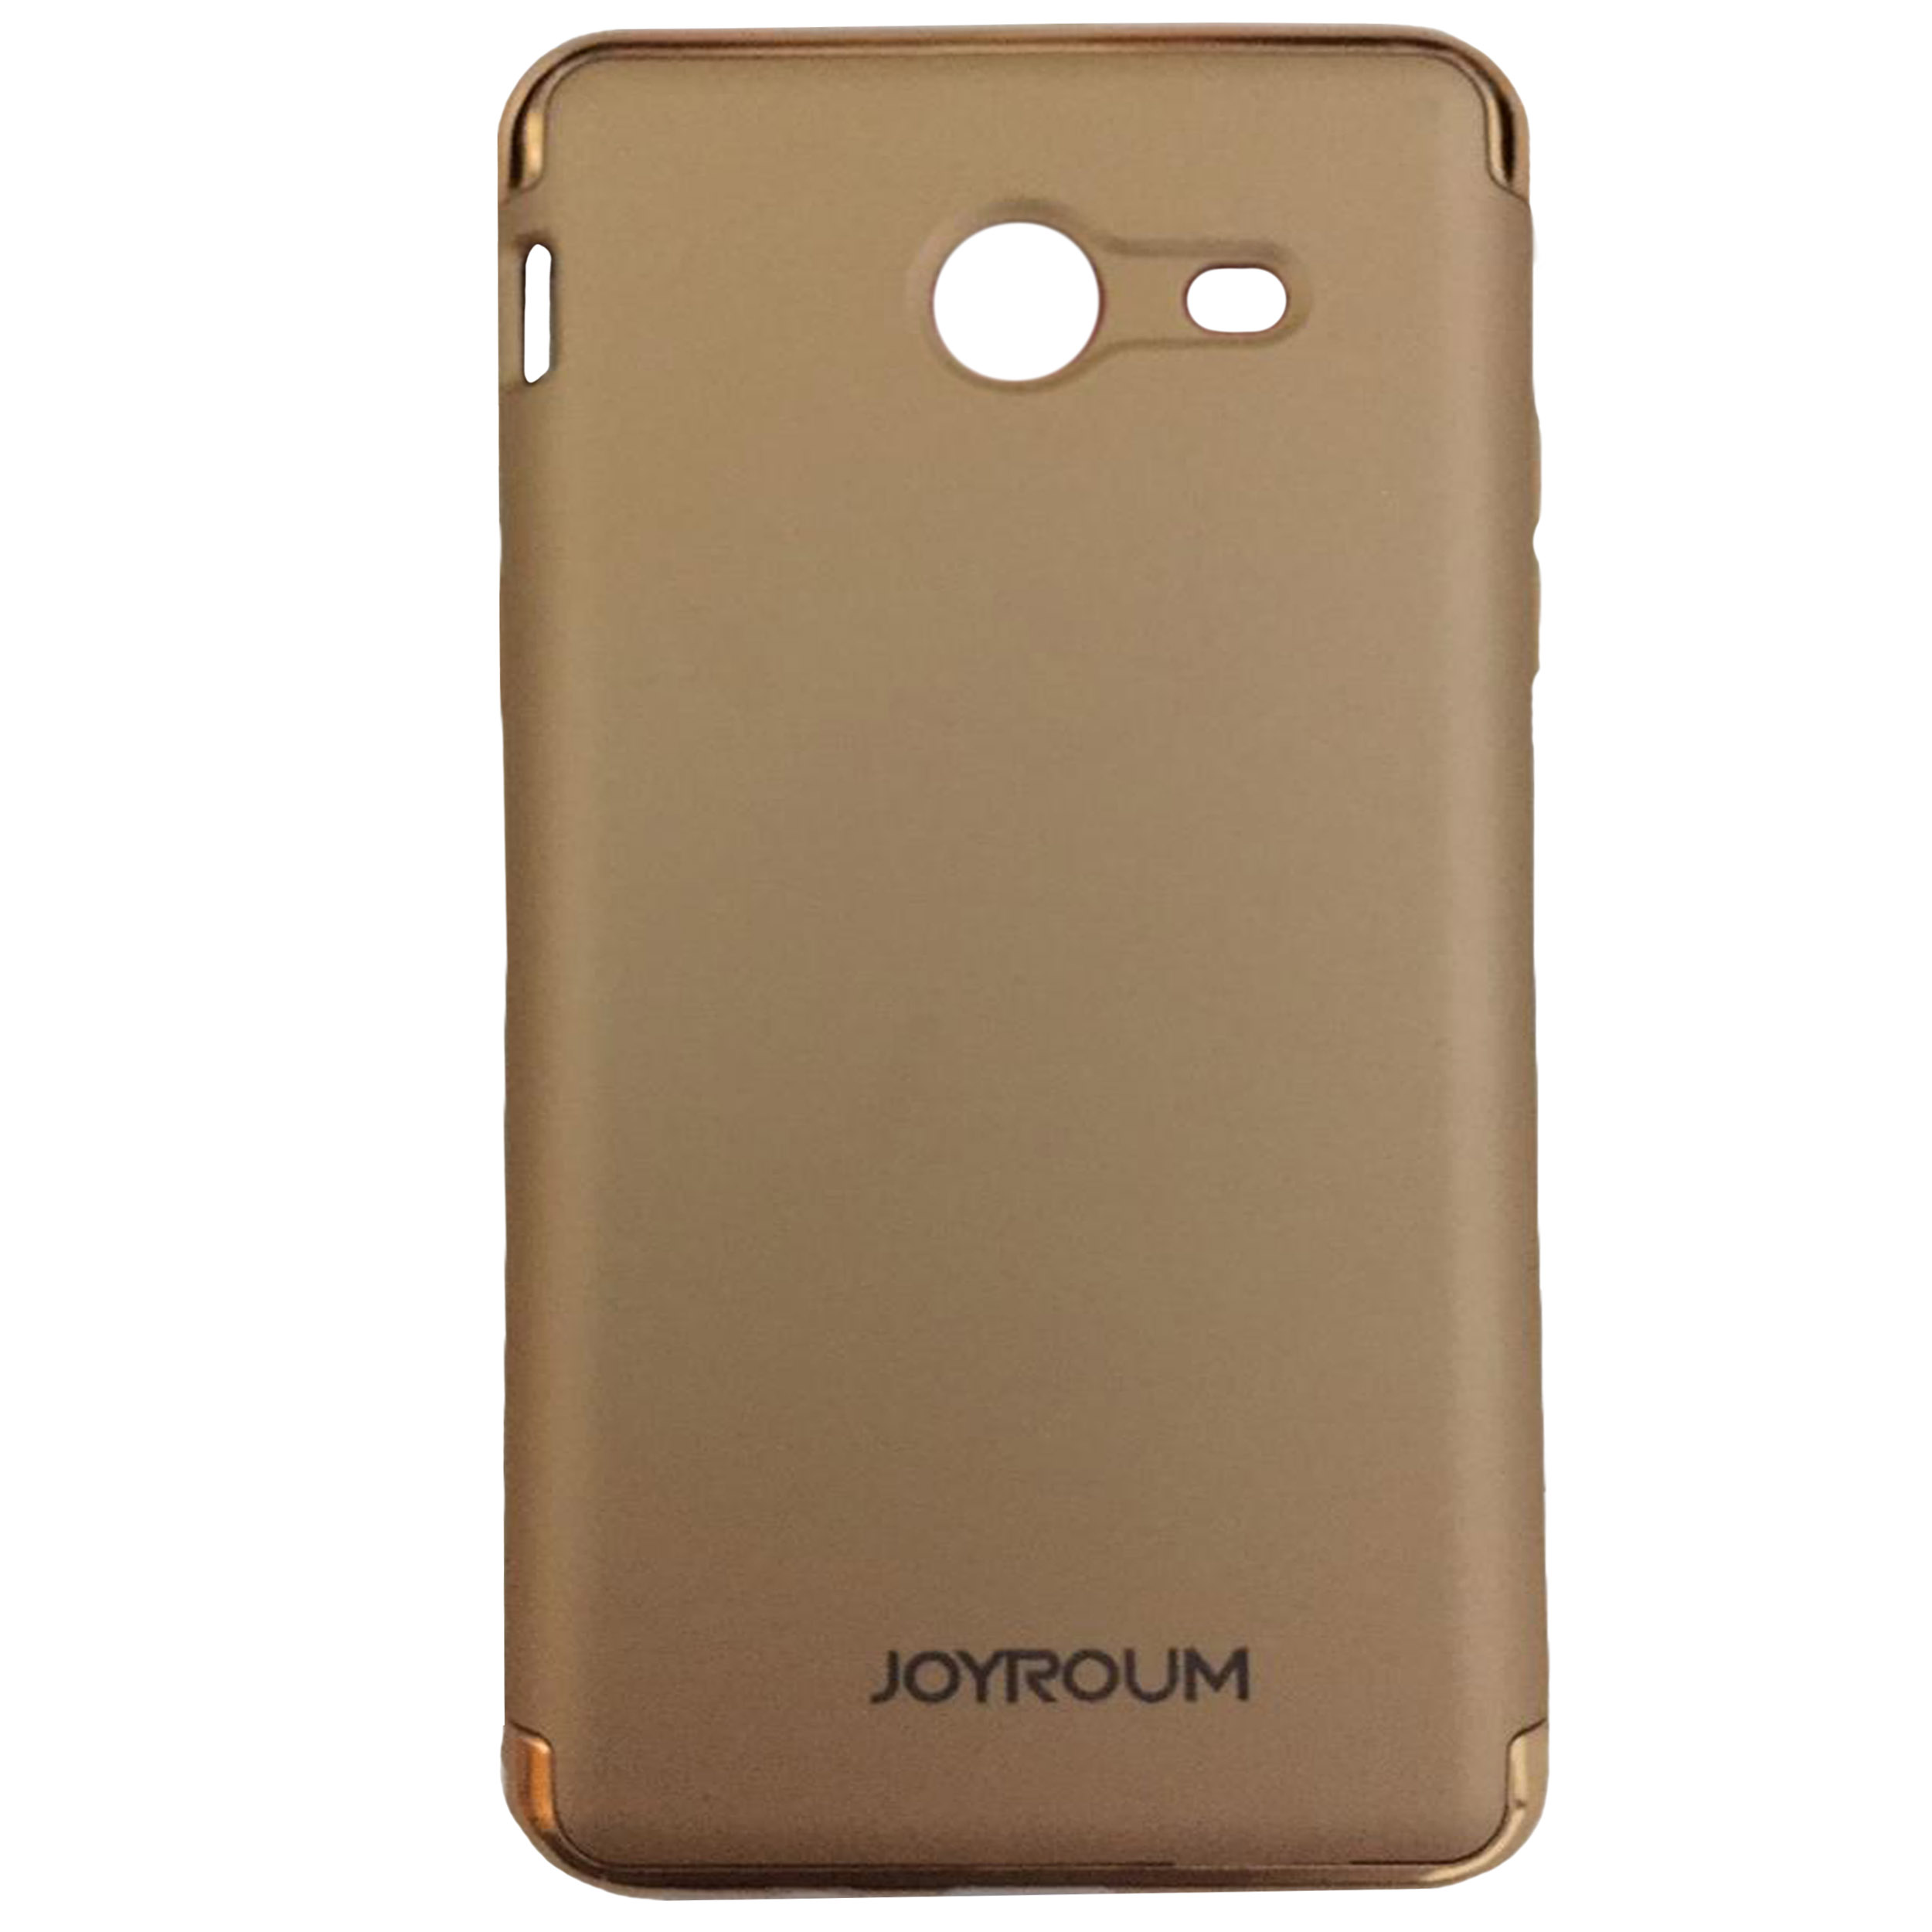 کاور جیروم مدل JYRM0 مناسب برای گوشی موبایل سامسونگ Galaxy J520 / J5 2017